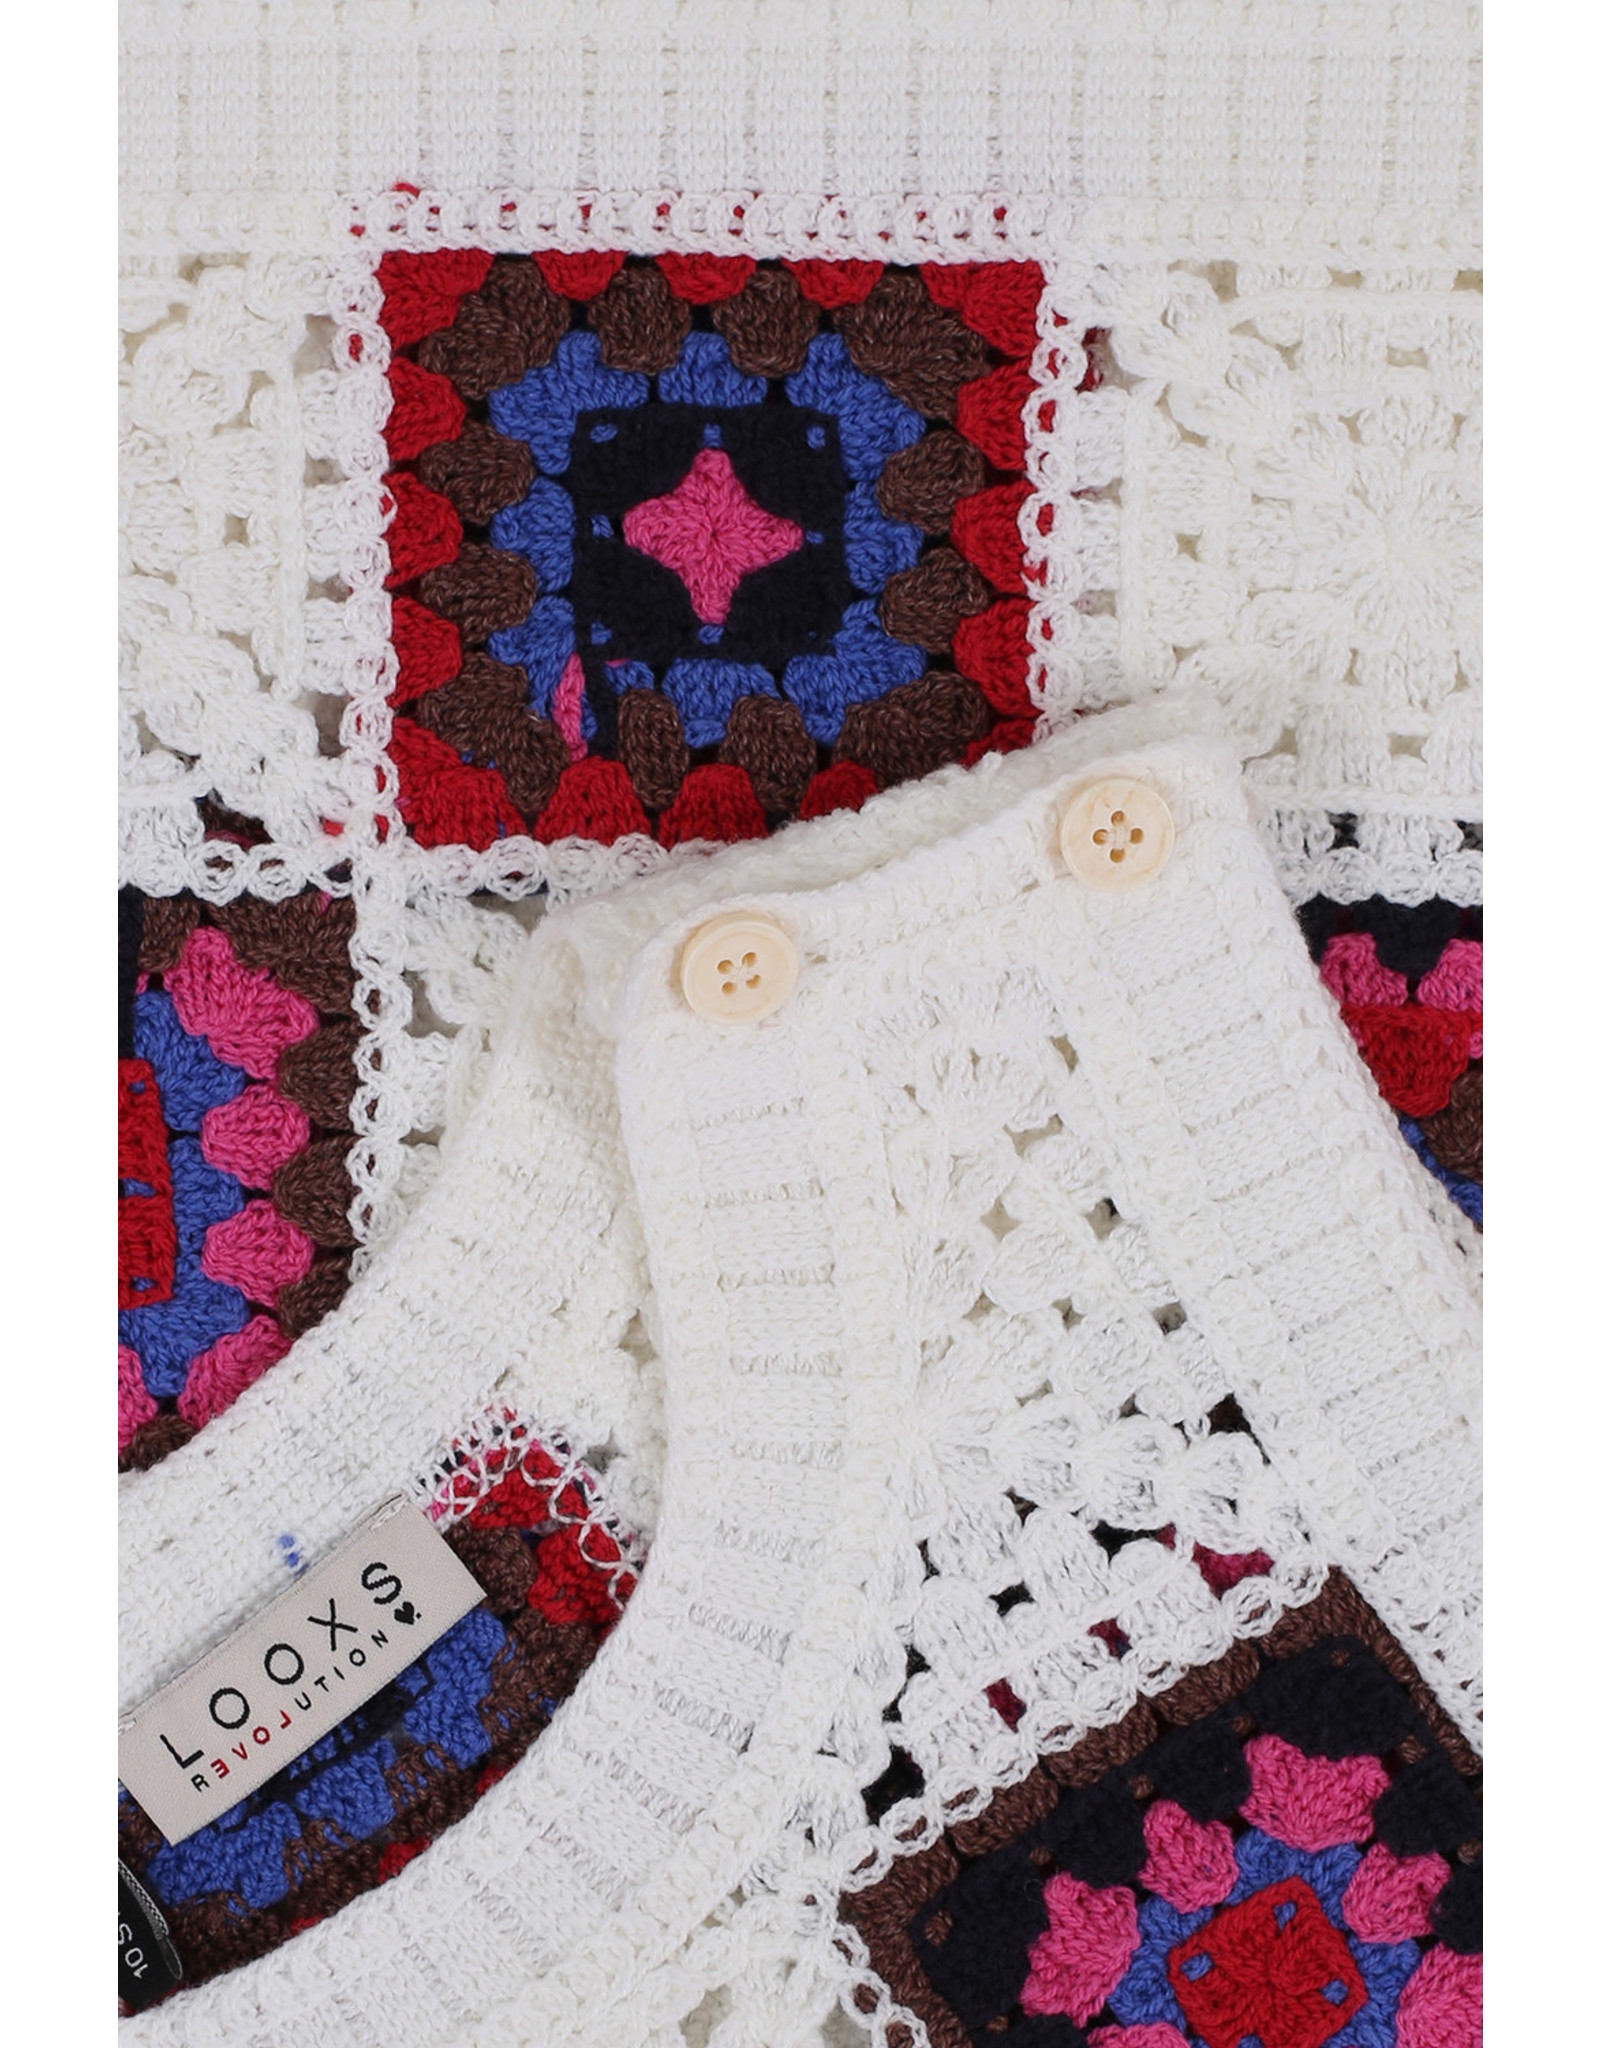 Looxs 10sixteen Crochet Top Crochet